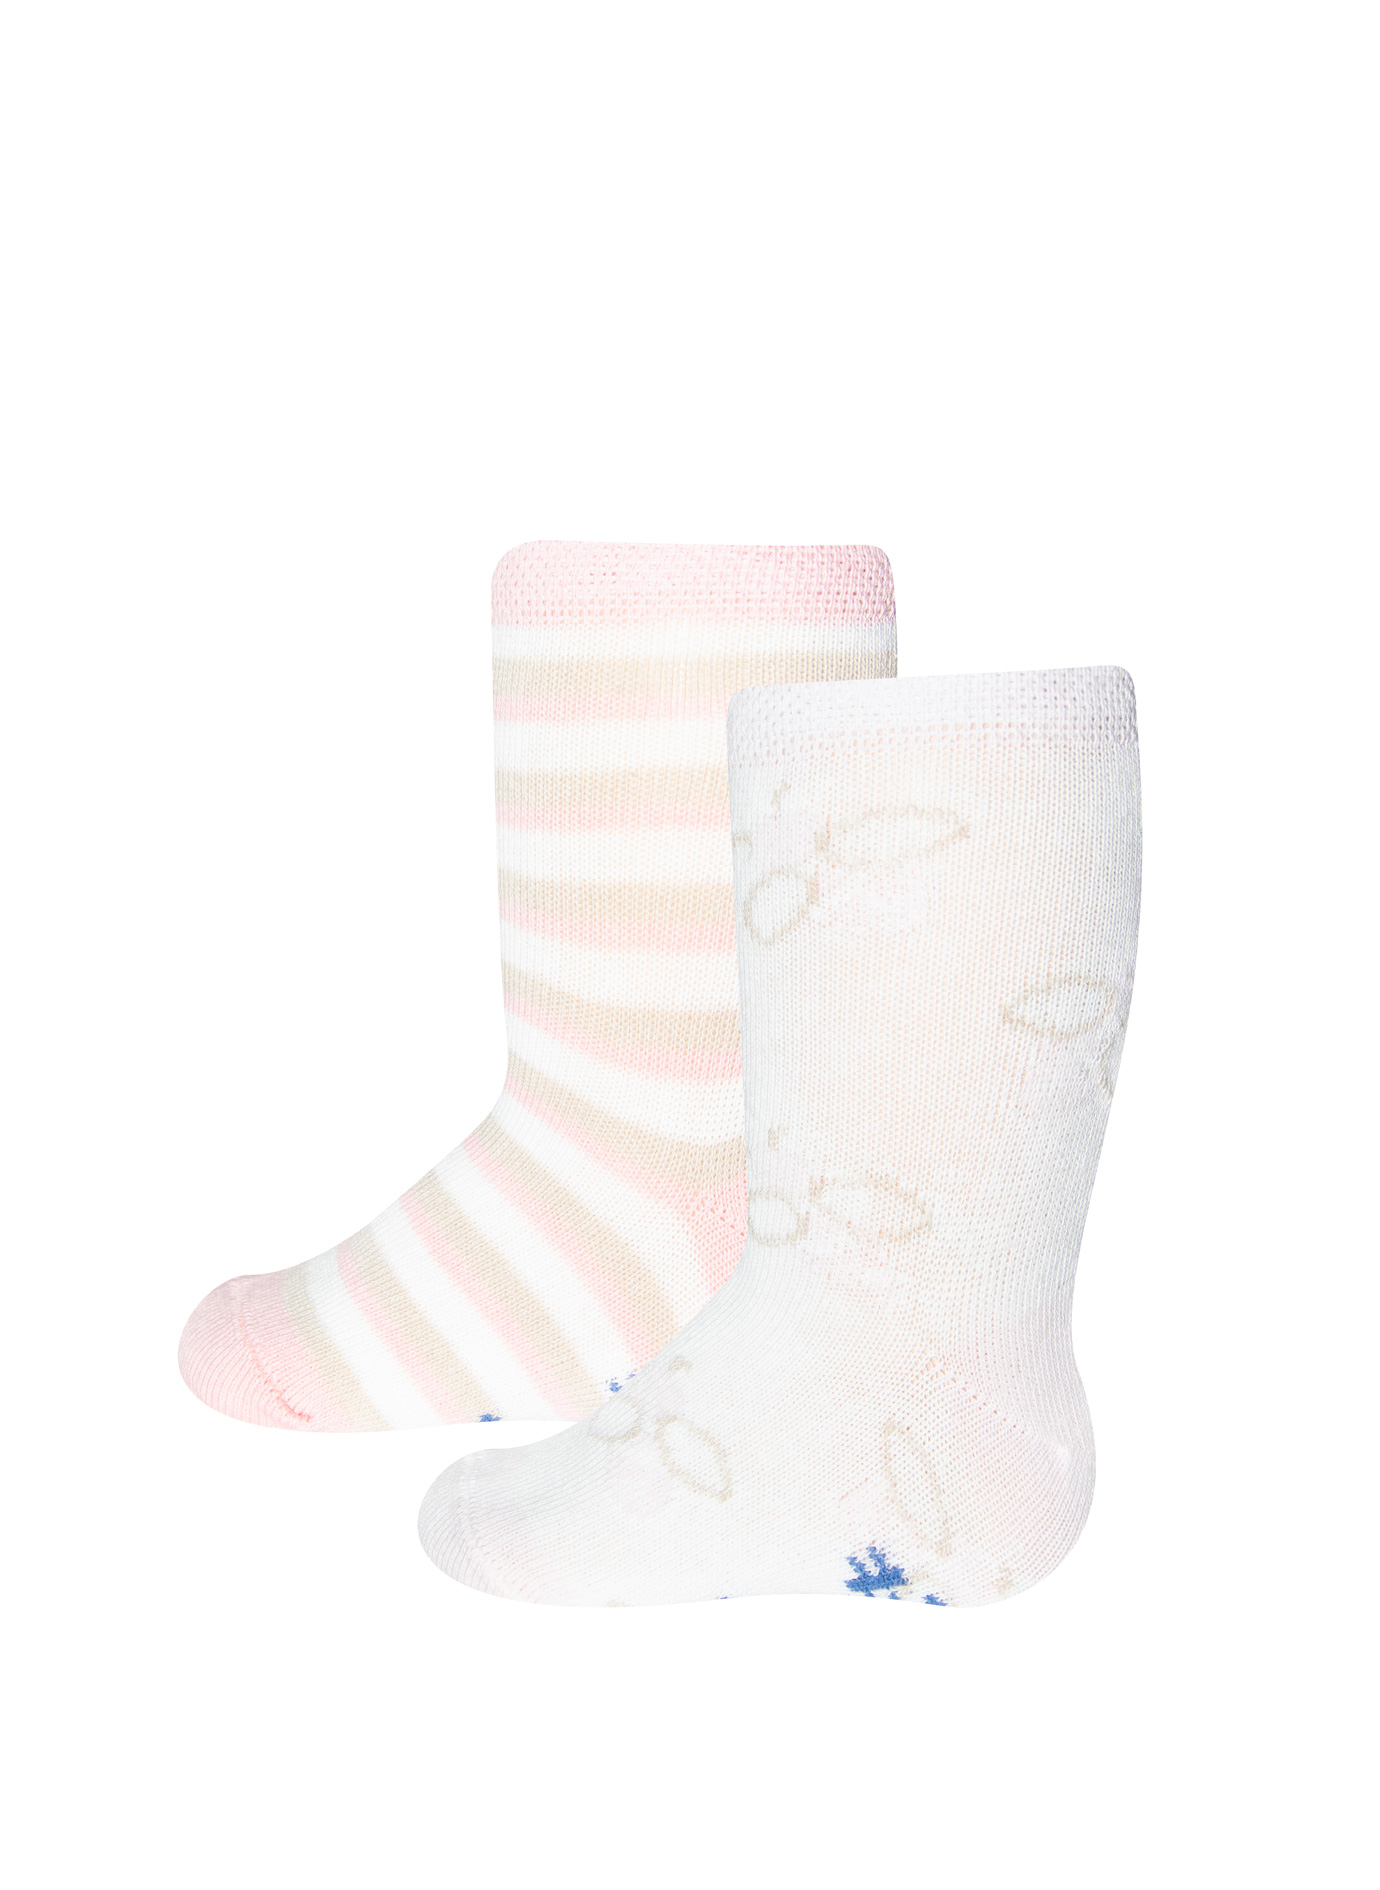 Mädchen-Socken (Doppelpack) Weiß und Rosa-geringelt